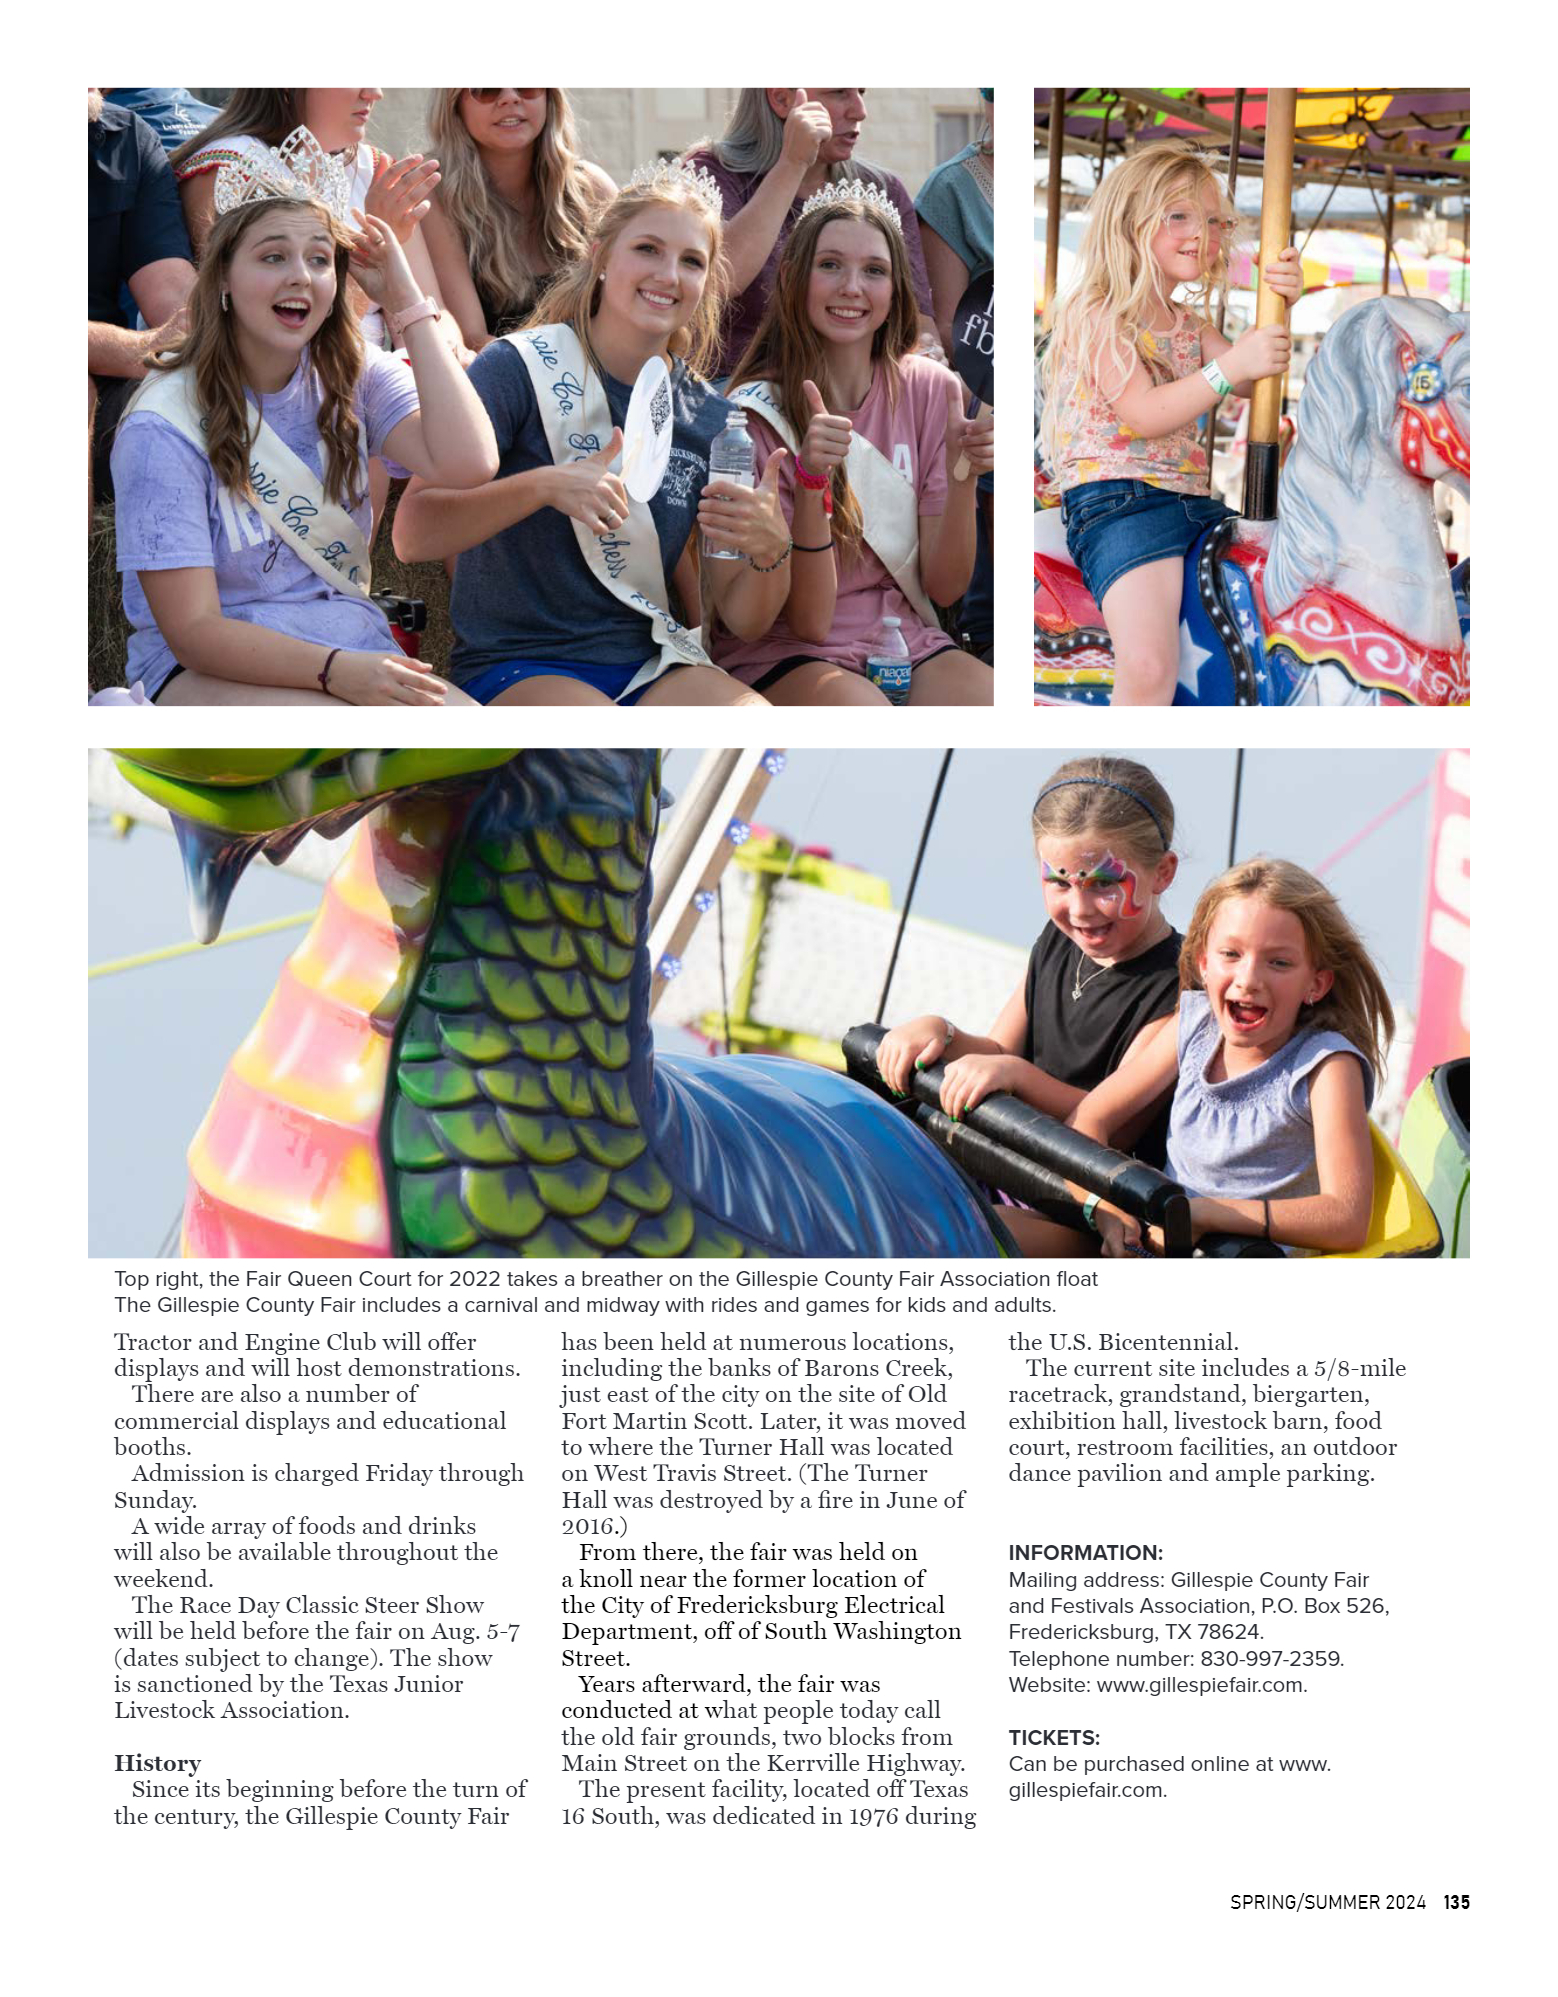 GoFredericksburg Visitors Guide Spring / Summer 20 - page 135